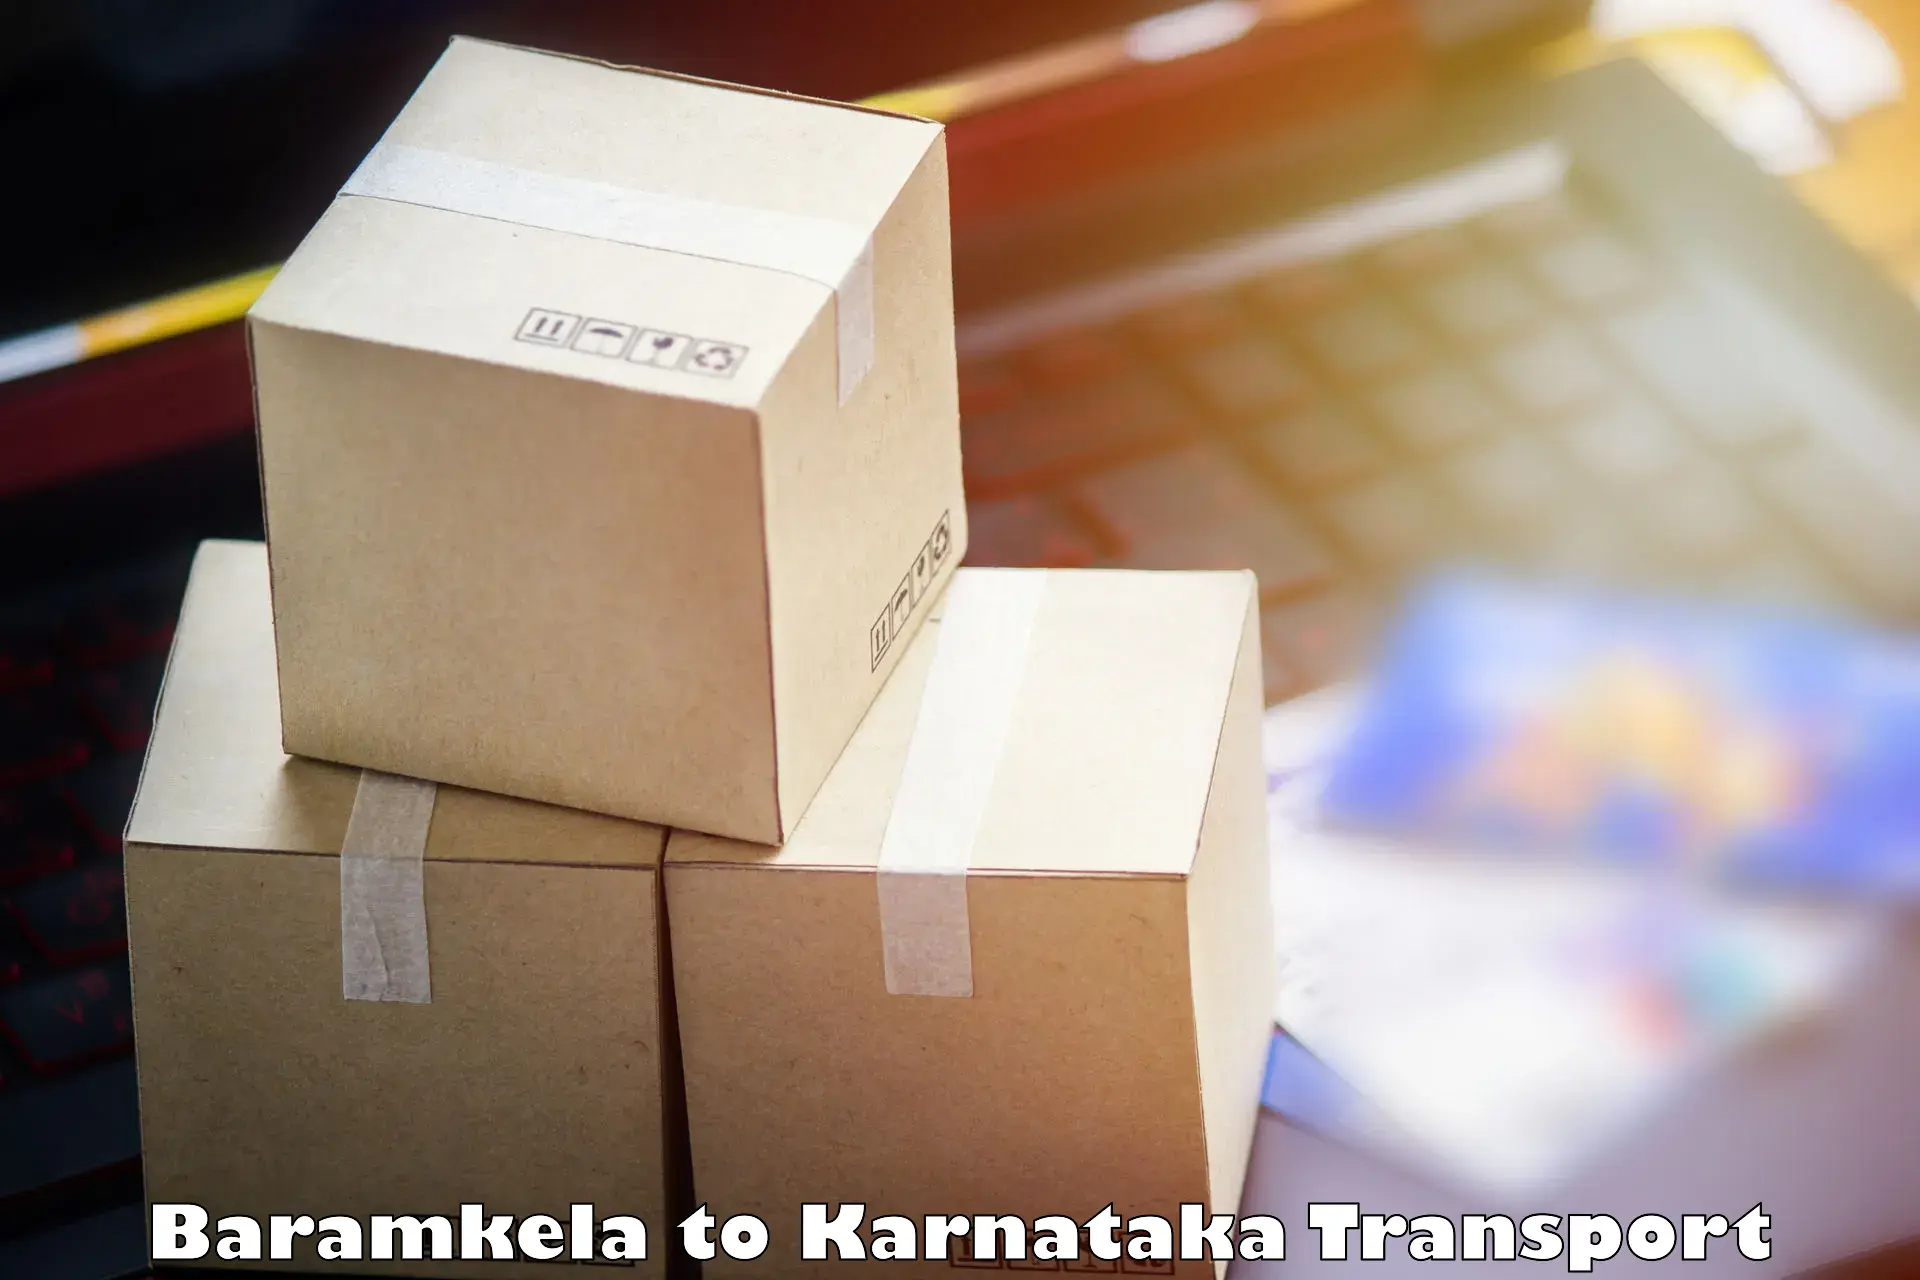 Intercity transport Baramkela to Mannaekhelli